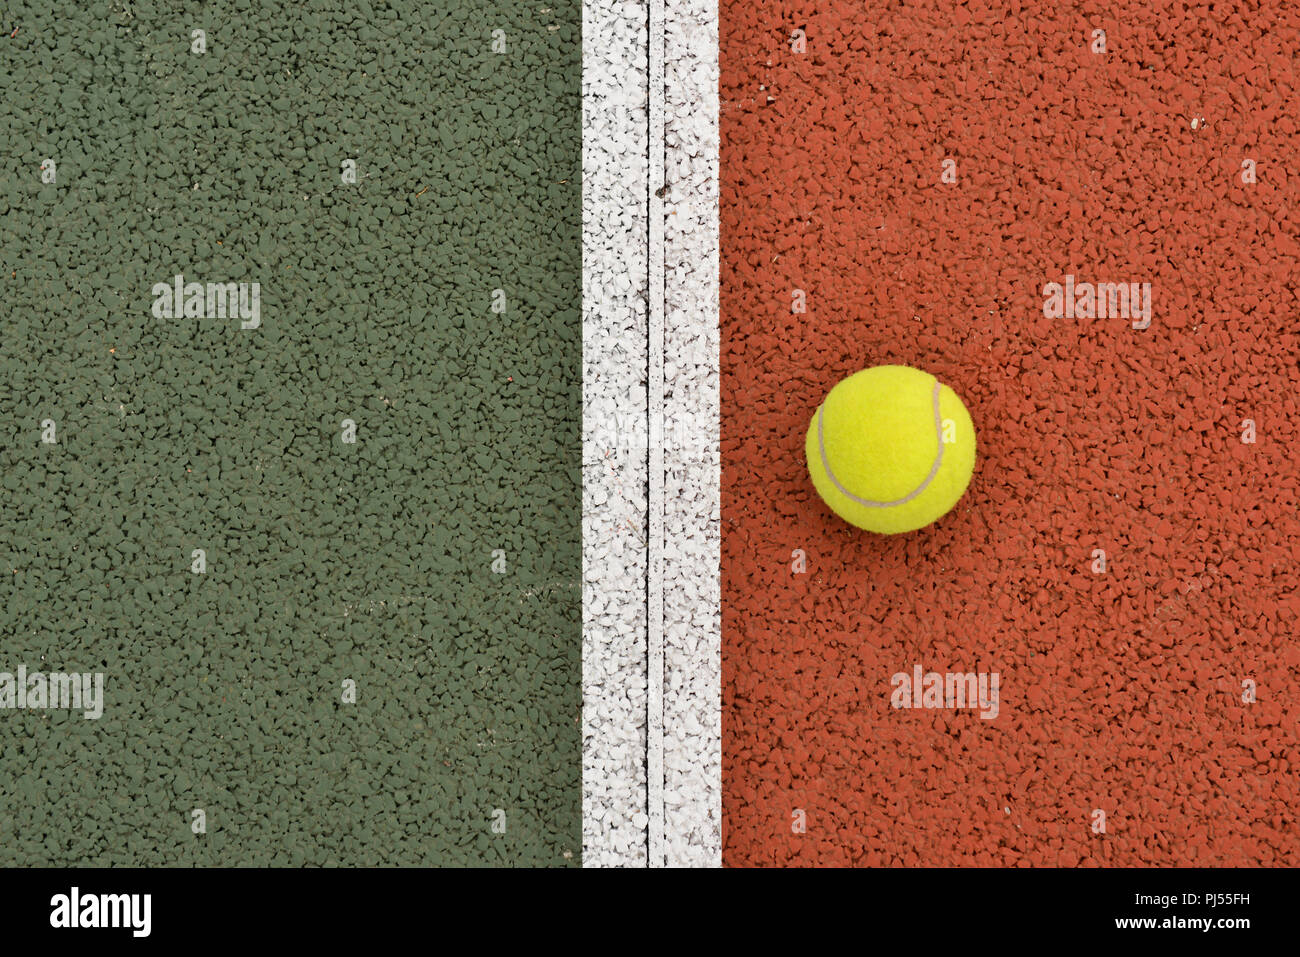 Campo da tennis: sfera gialla e la linea bianca su uno sfondo di colore ocra, simile all'argilla Foto Stock